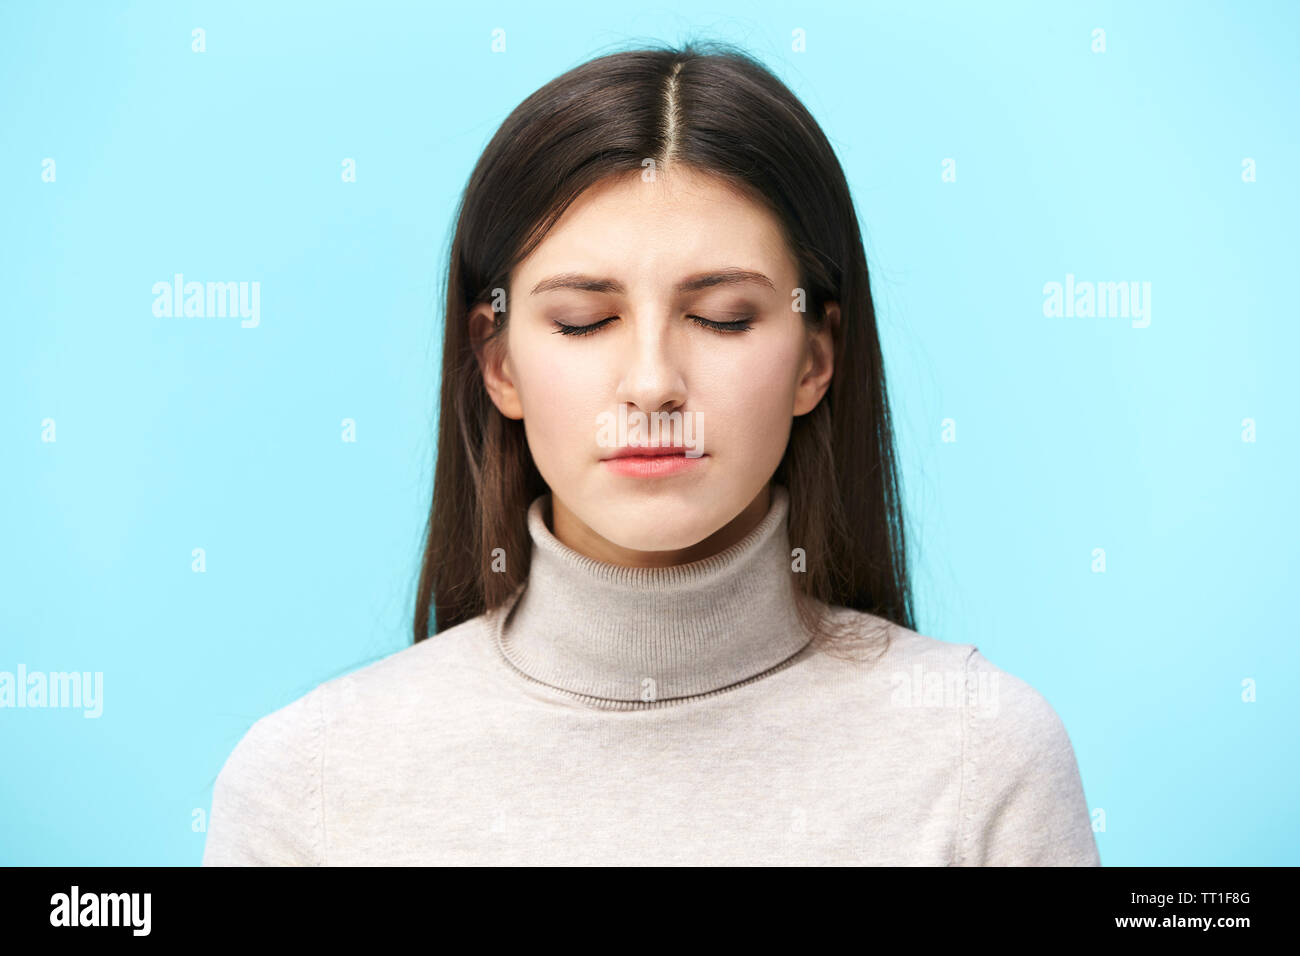 Portrait einer jungen kaukasischen Frau, die Augen geschlossen, auf blauem Hintergrund isoliert Stockfoto